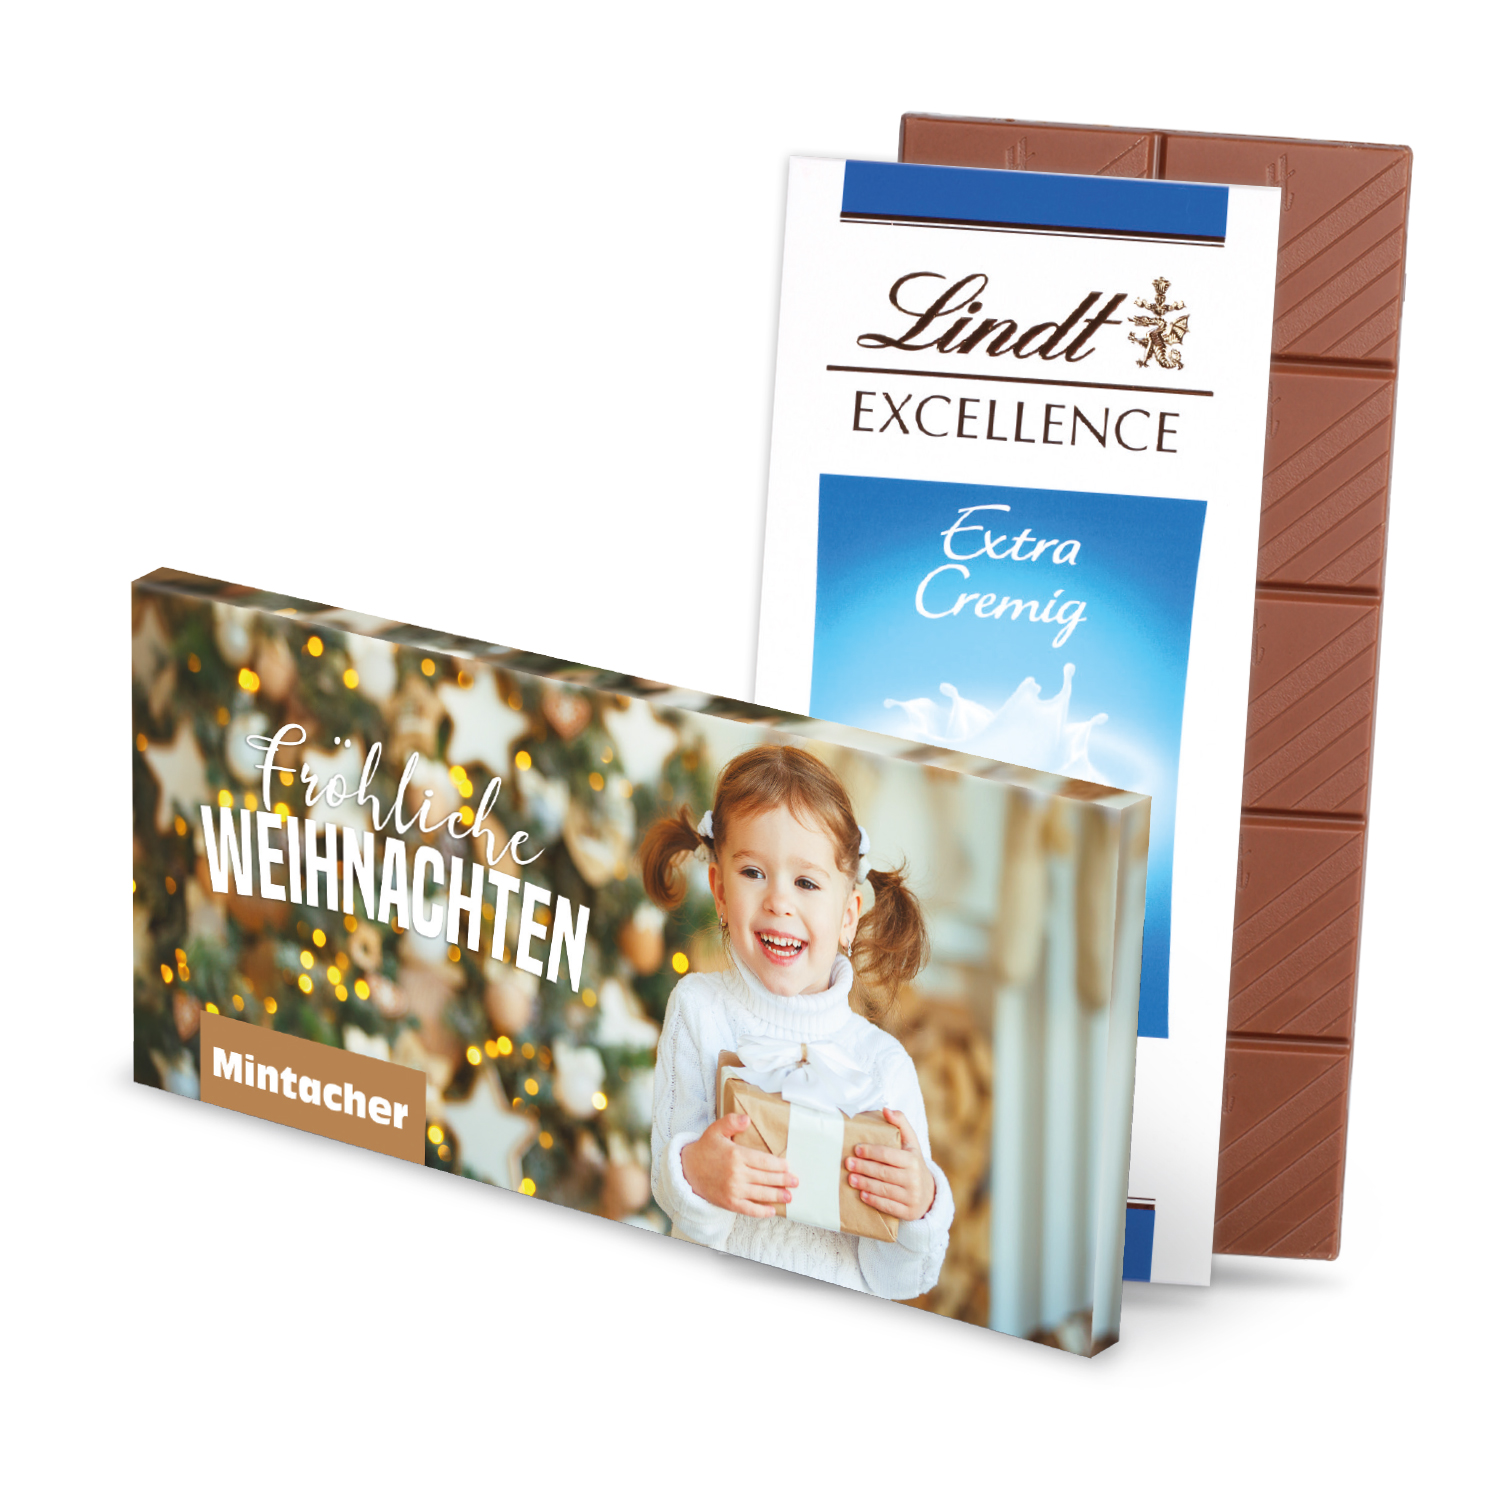 Schokoladentafel Excellence von Lindt, Schokolade, Weihnachten, WERBEARTIKEL